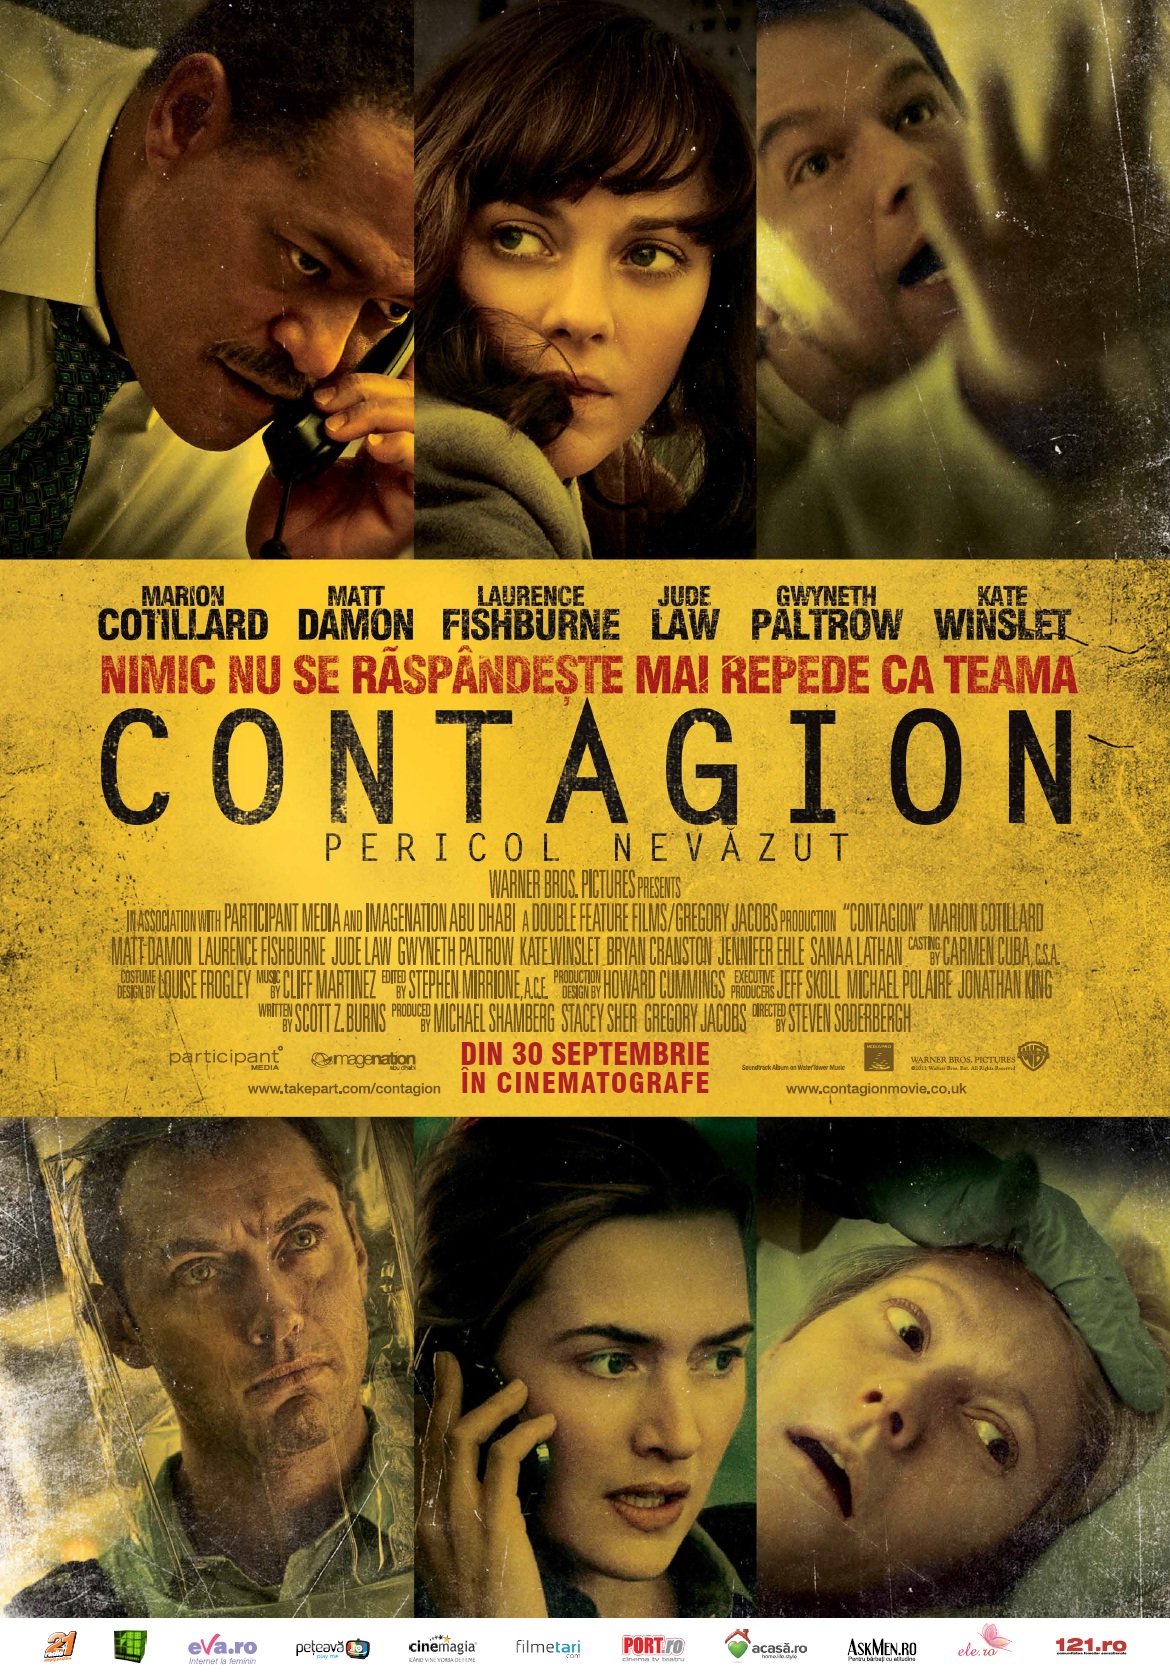 Imagini pentru Contagion – Epidemia: Pericol nevăzut